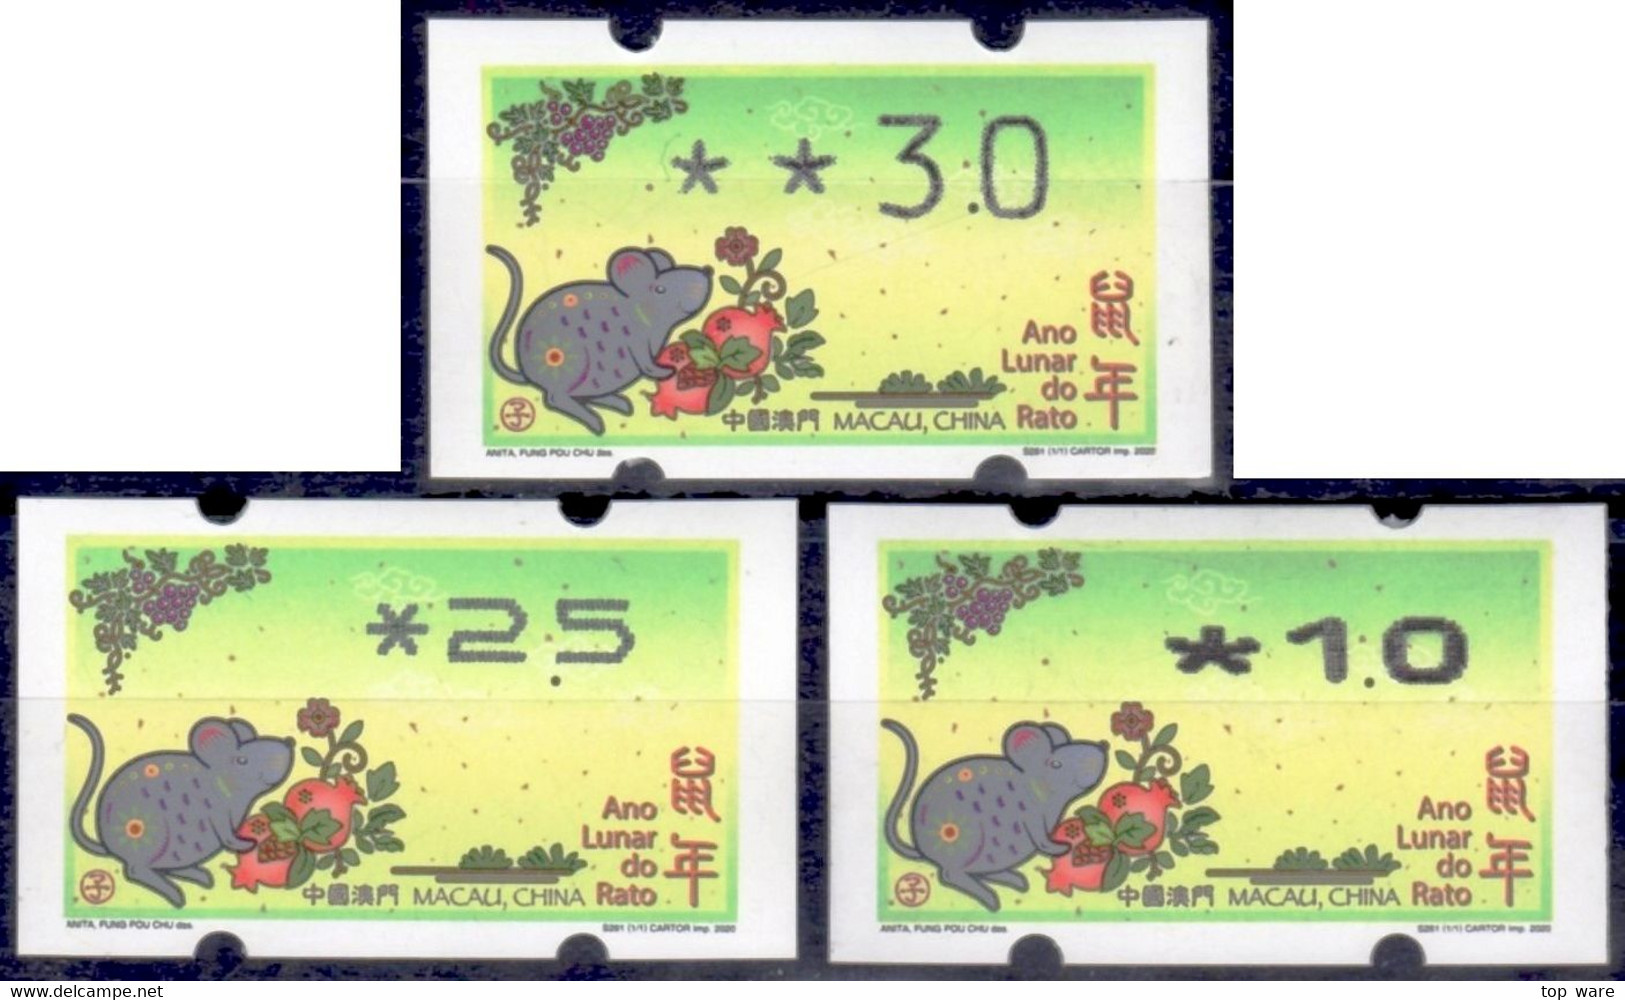 2020 Chine Macao Macau ATM Stamps Année Du Souris / Tous Types D'imprimantes Klussendorf Nagler Automatenmarken - Automaten